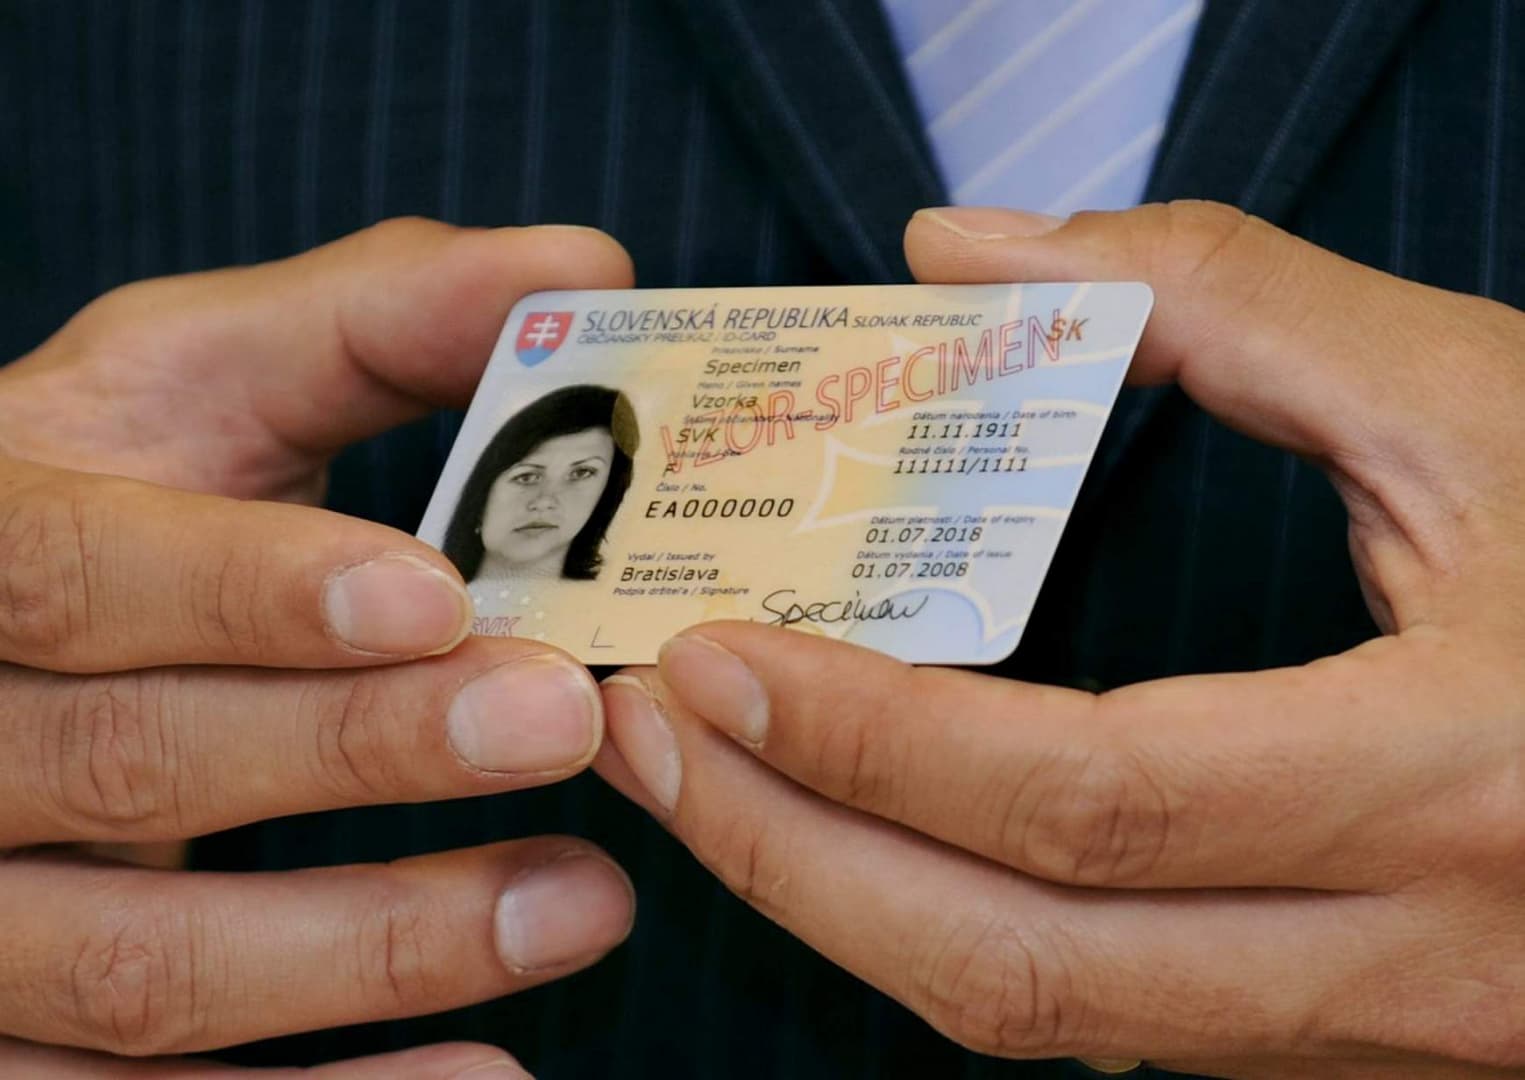 December elejétől lehet biometrikus személyi igazolványt kérvényezni